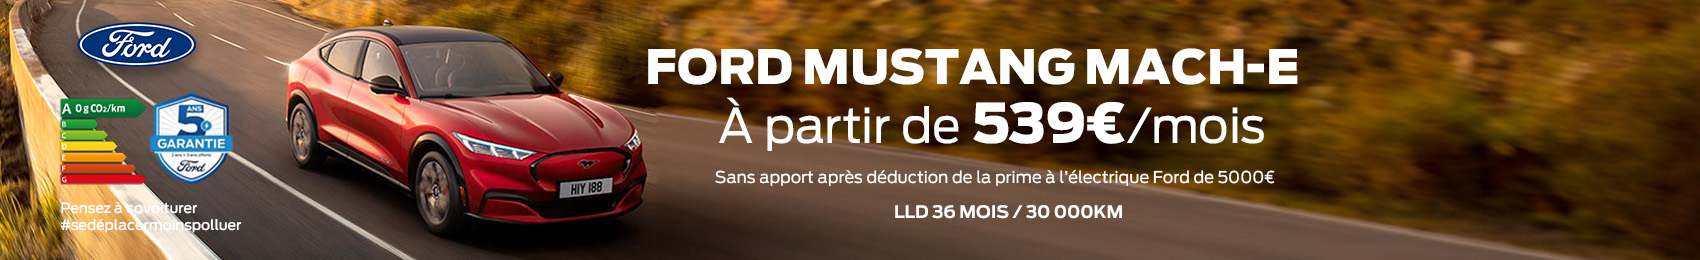 Bannière desktop Offre Ford Mustang Mach-e